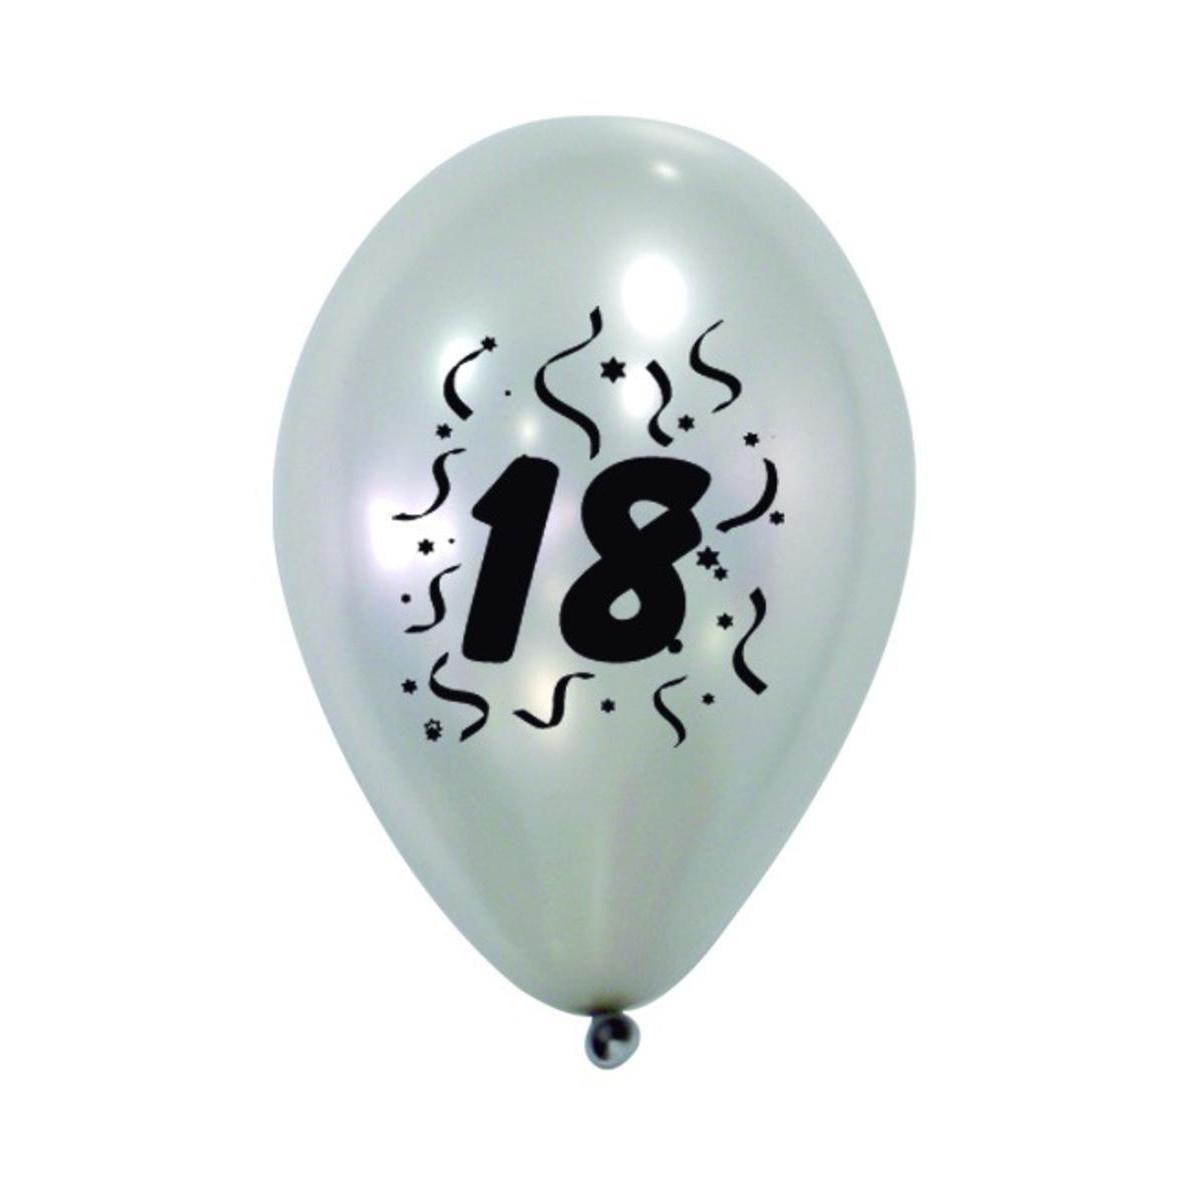 8 ballons nacrés imprimés 18 ans - Latex - ø 28 cm - Argent